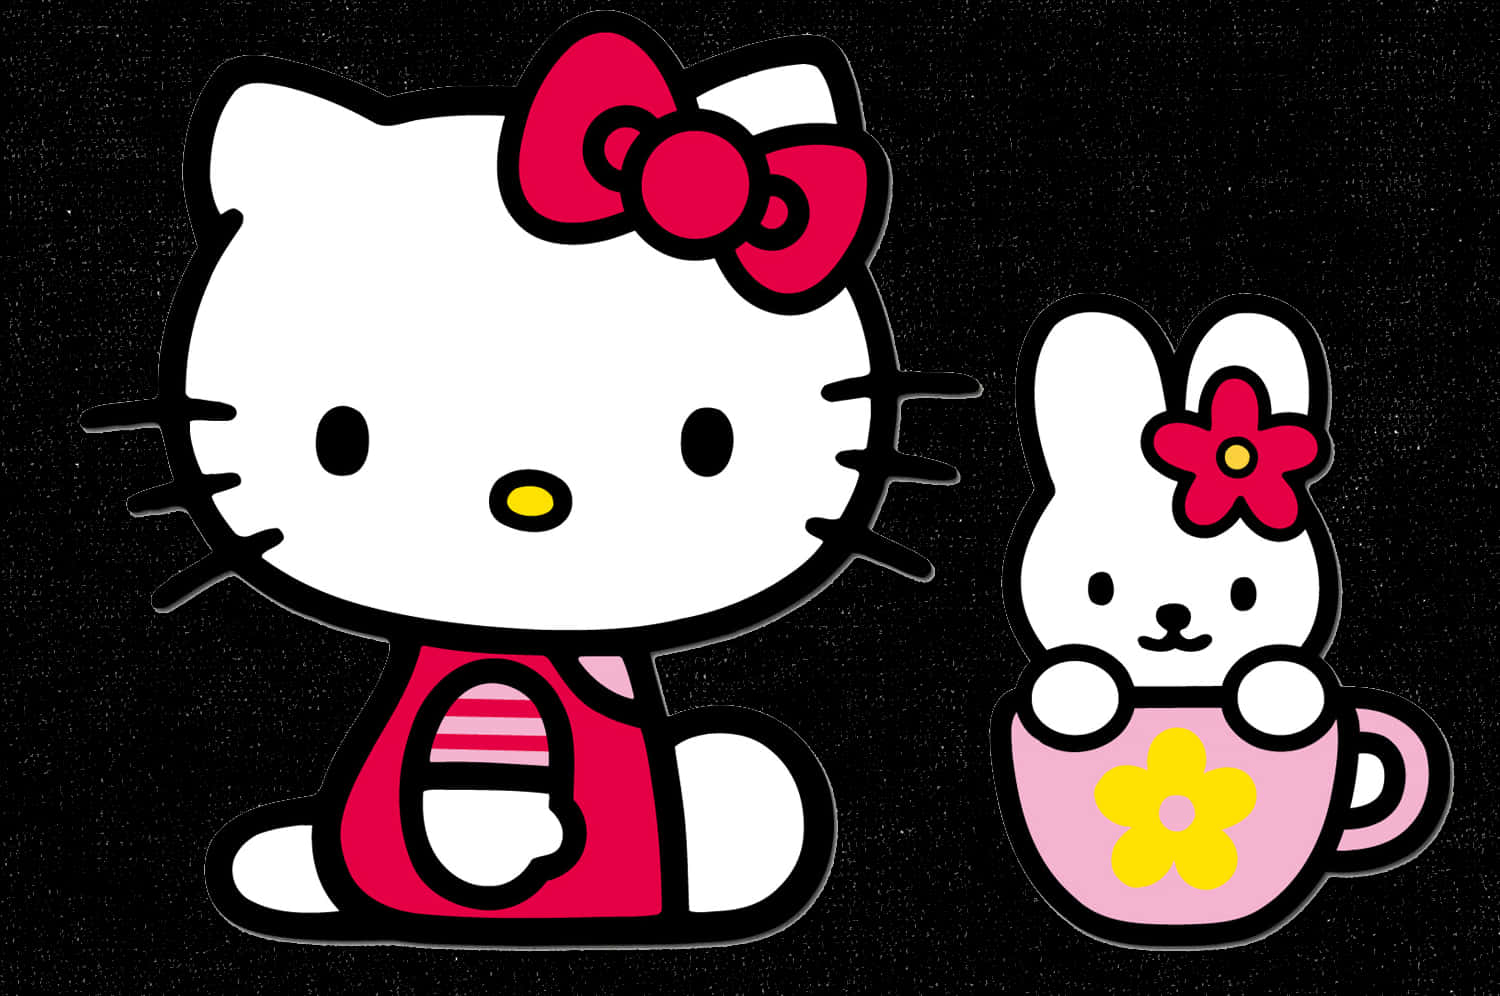 Hello Kittyand Friend Cute Illustration